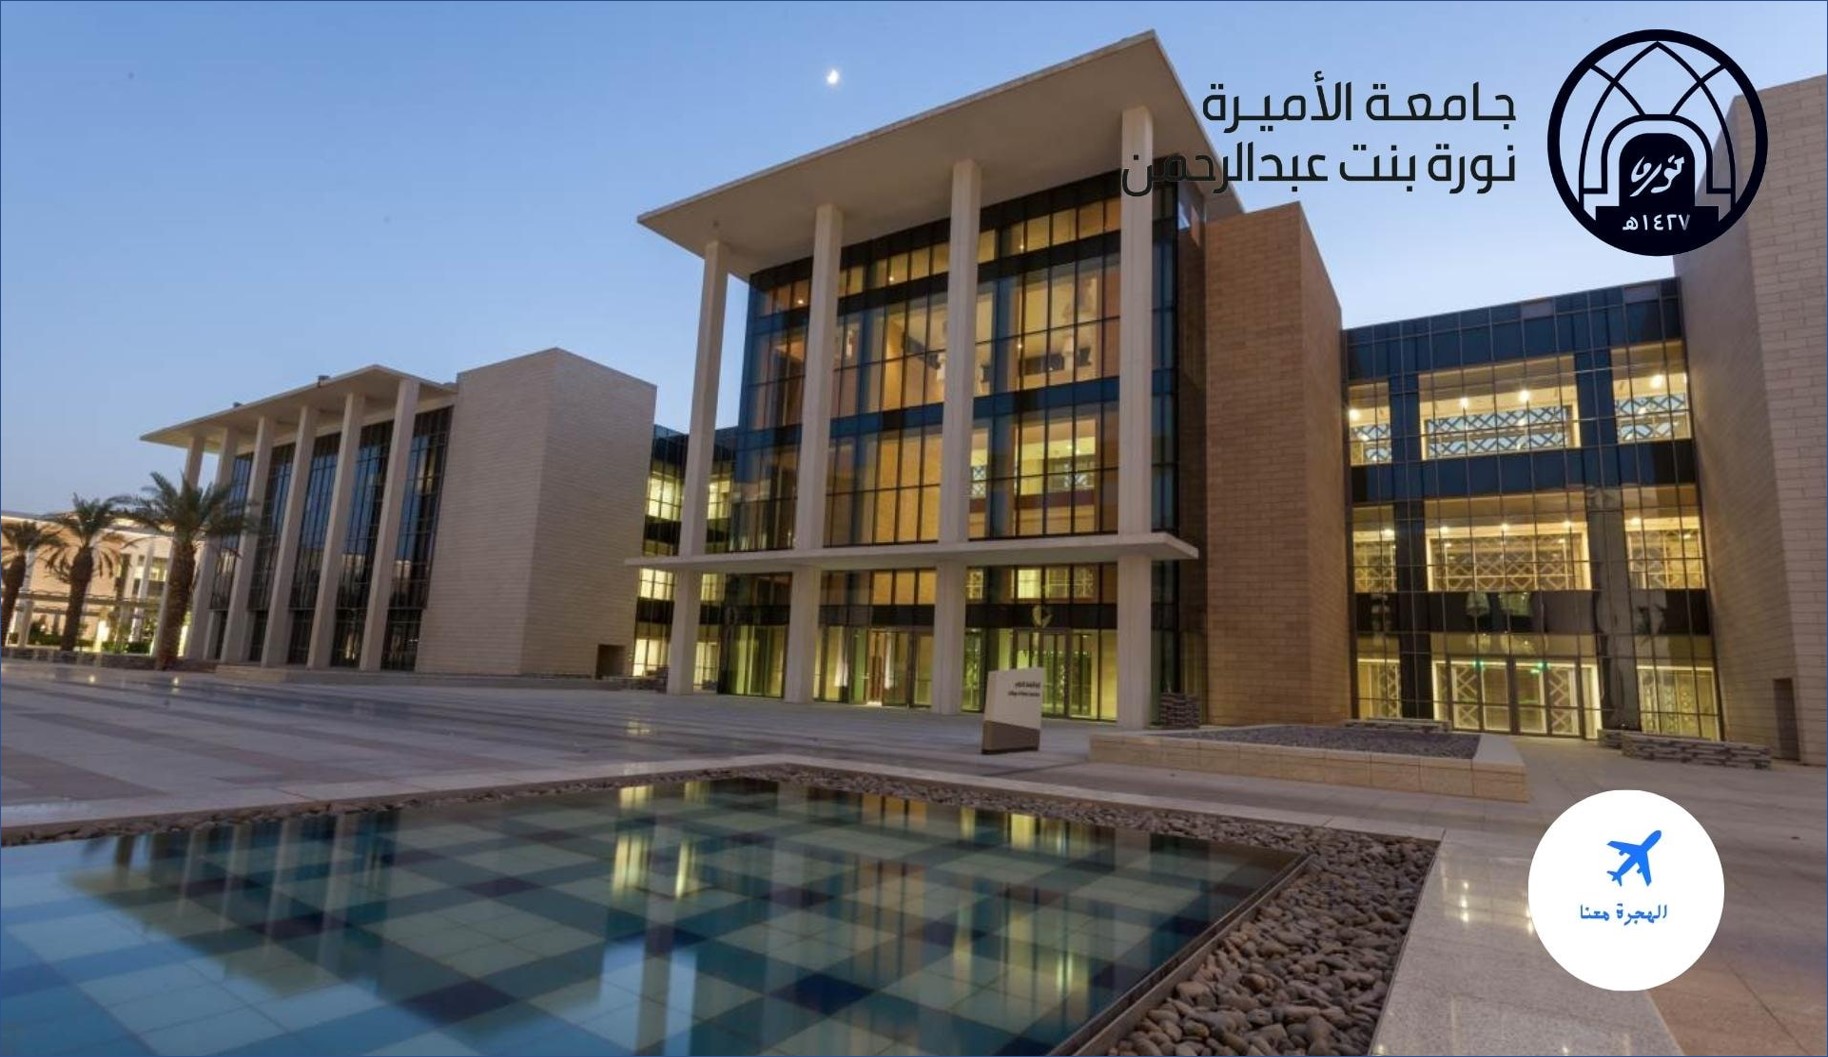 جامعة الأميرة نورة تعلن عن وظائف للرجال والنساء